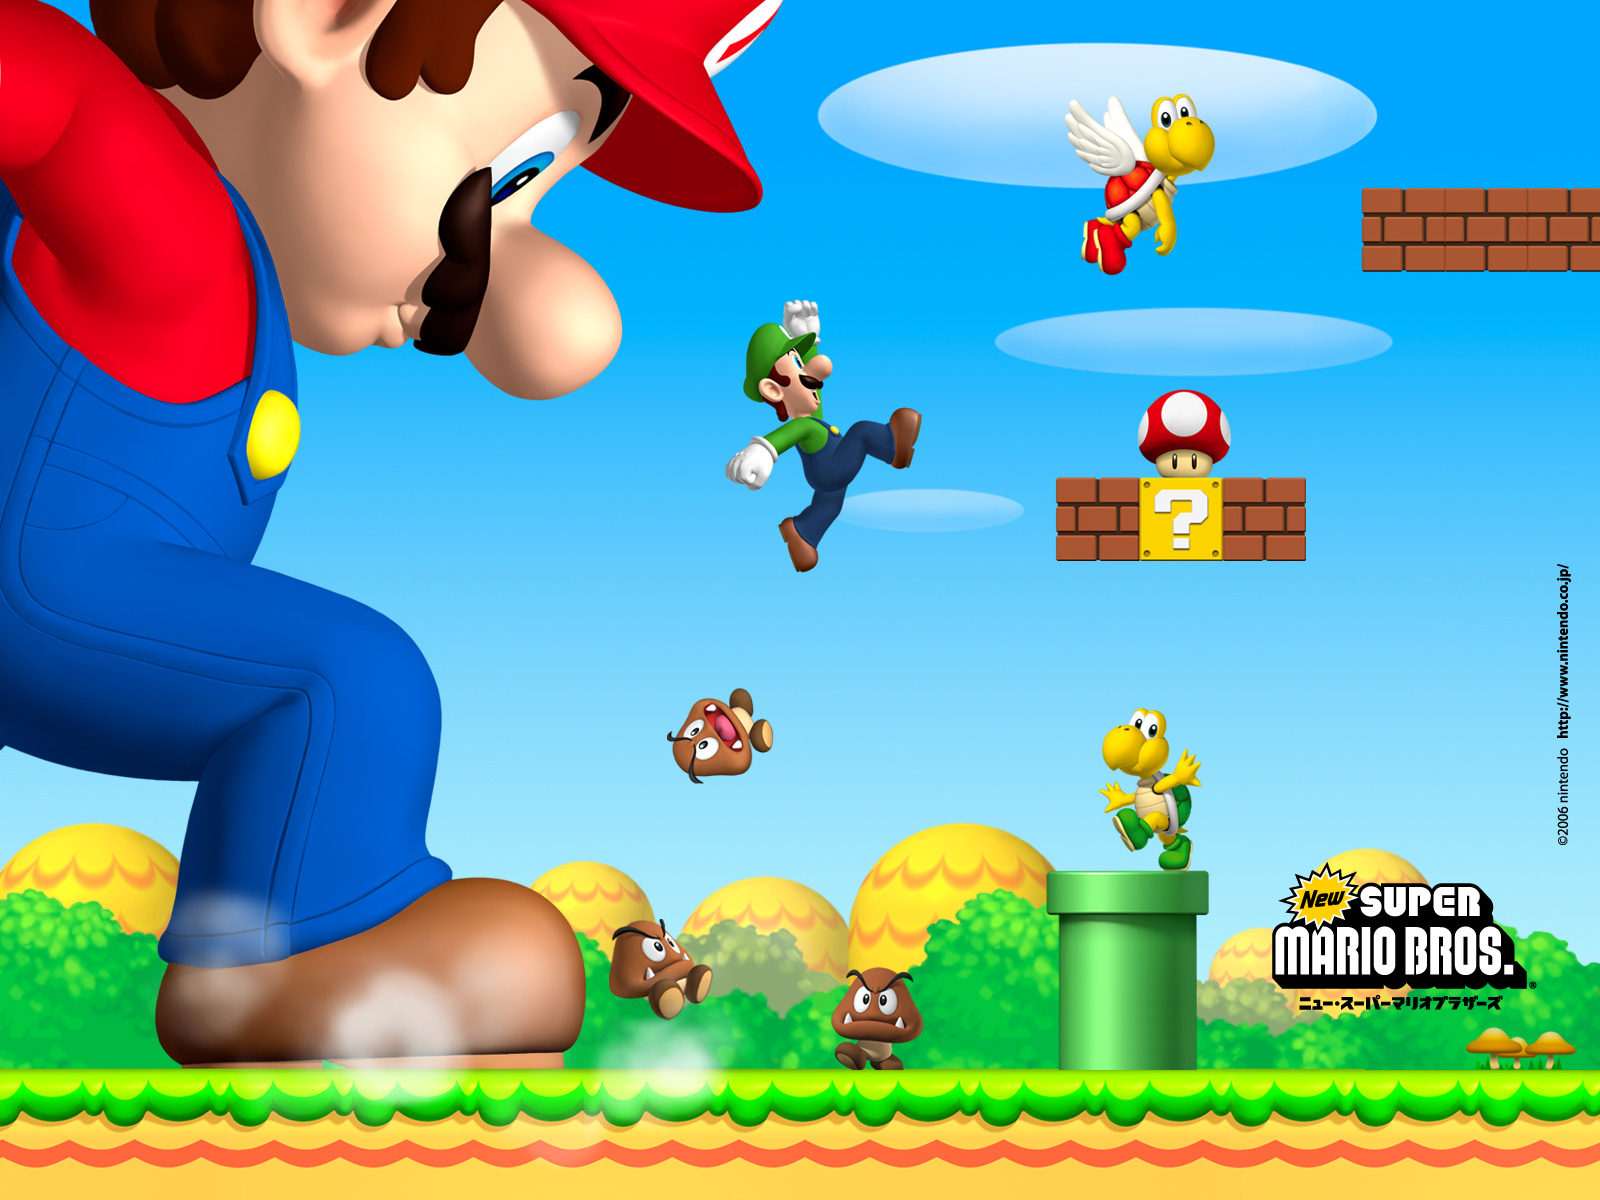 Mario new life. New super Mario Bros. Игра. Игра Марио супер Марио БРОС. Супер Марио БРОС Нинтендо. Игры New super Mario Bros u.